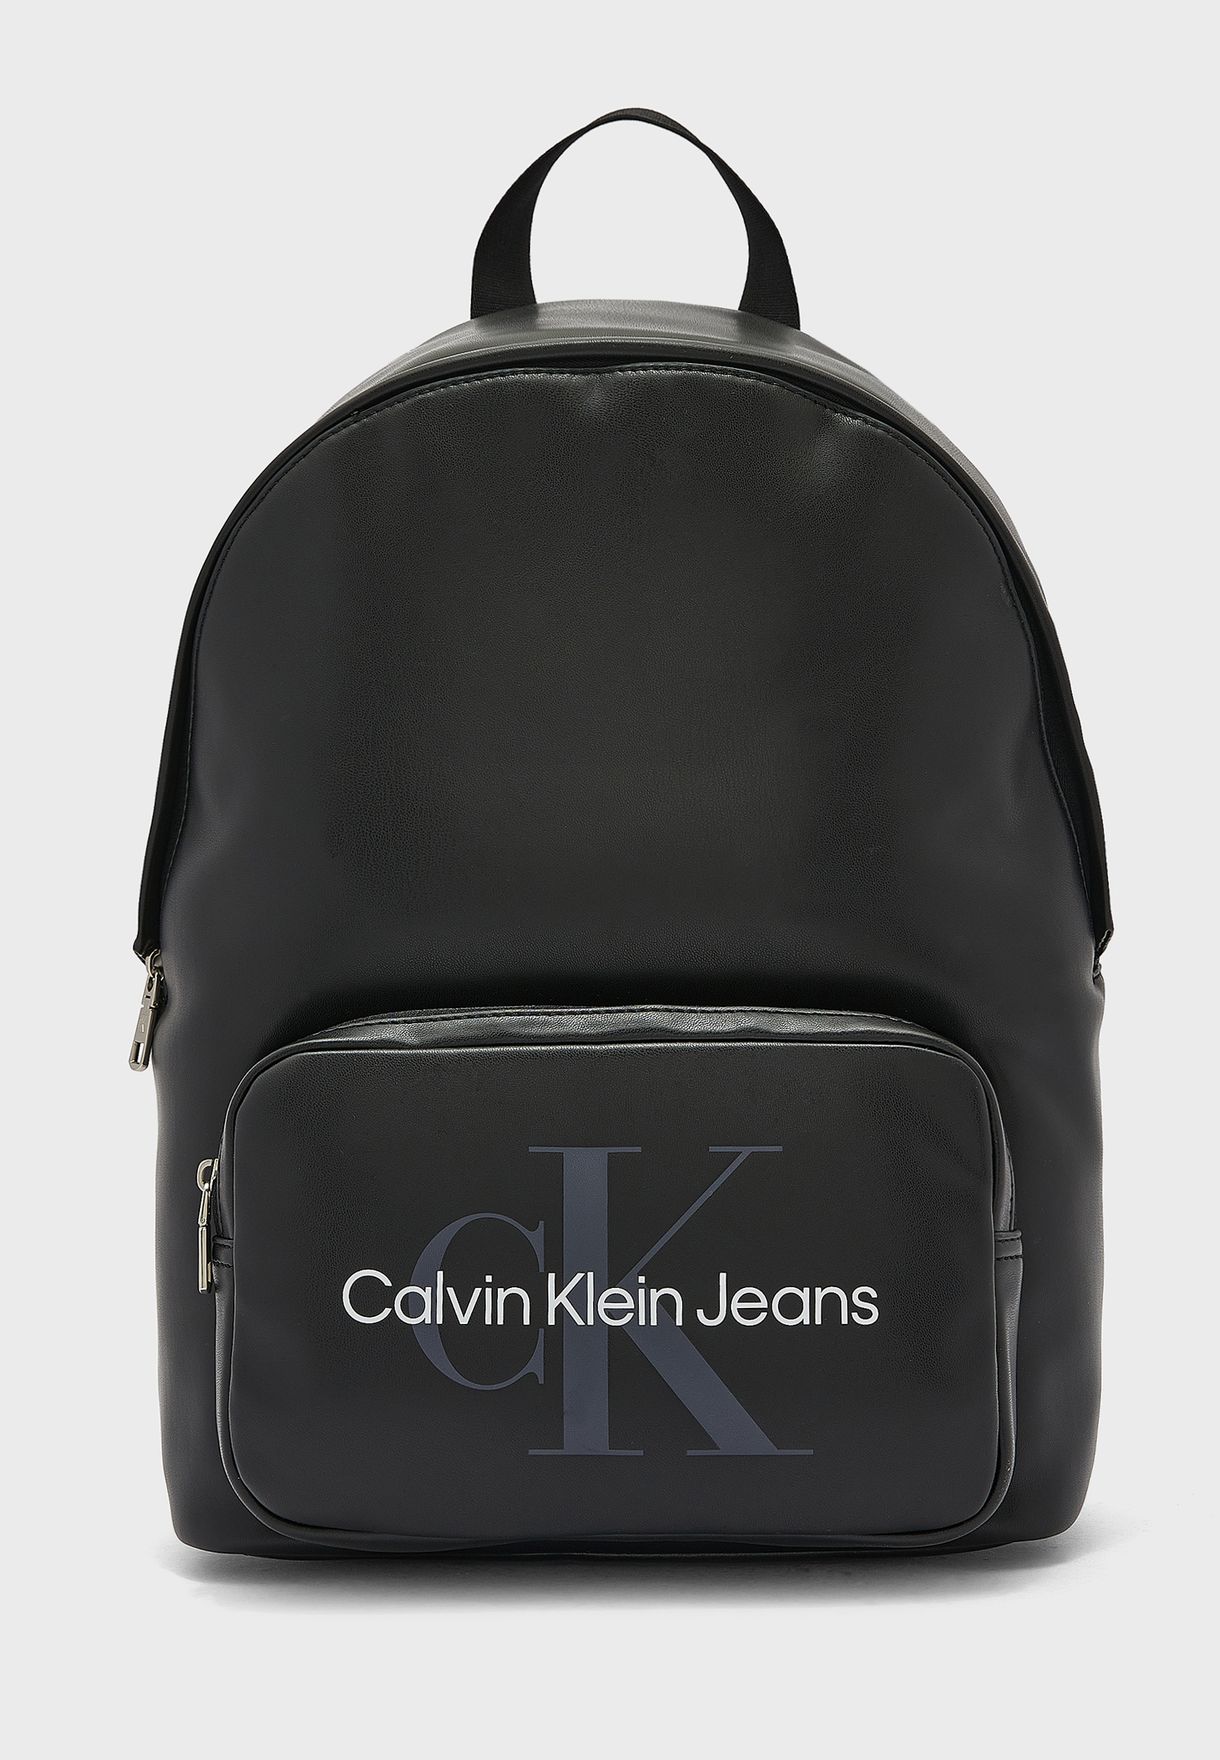 Descubrir 63+ imagen calvin klein mens backpacks - Thptnganamst.edu.vn